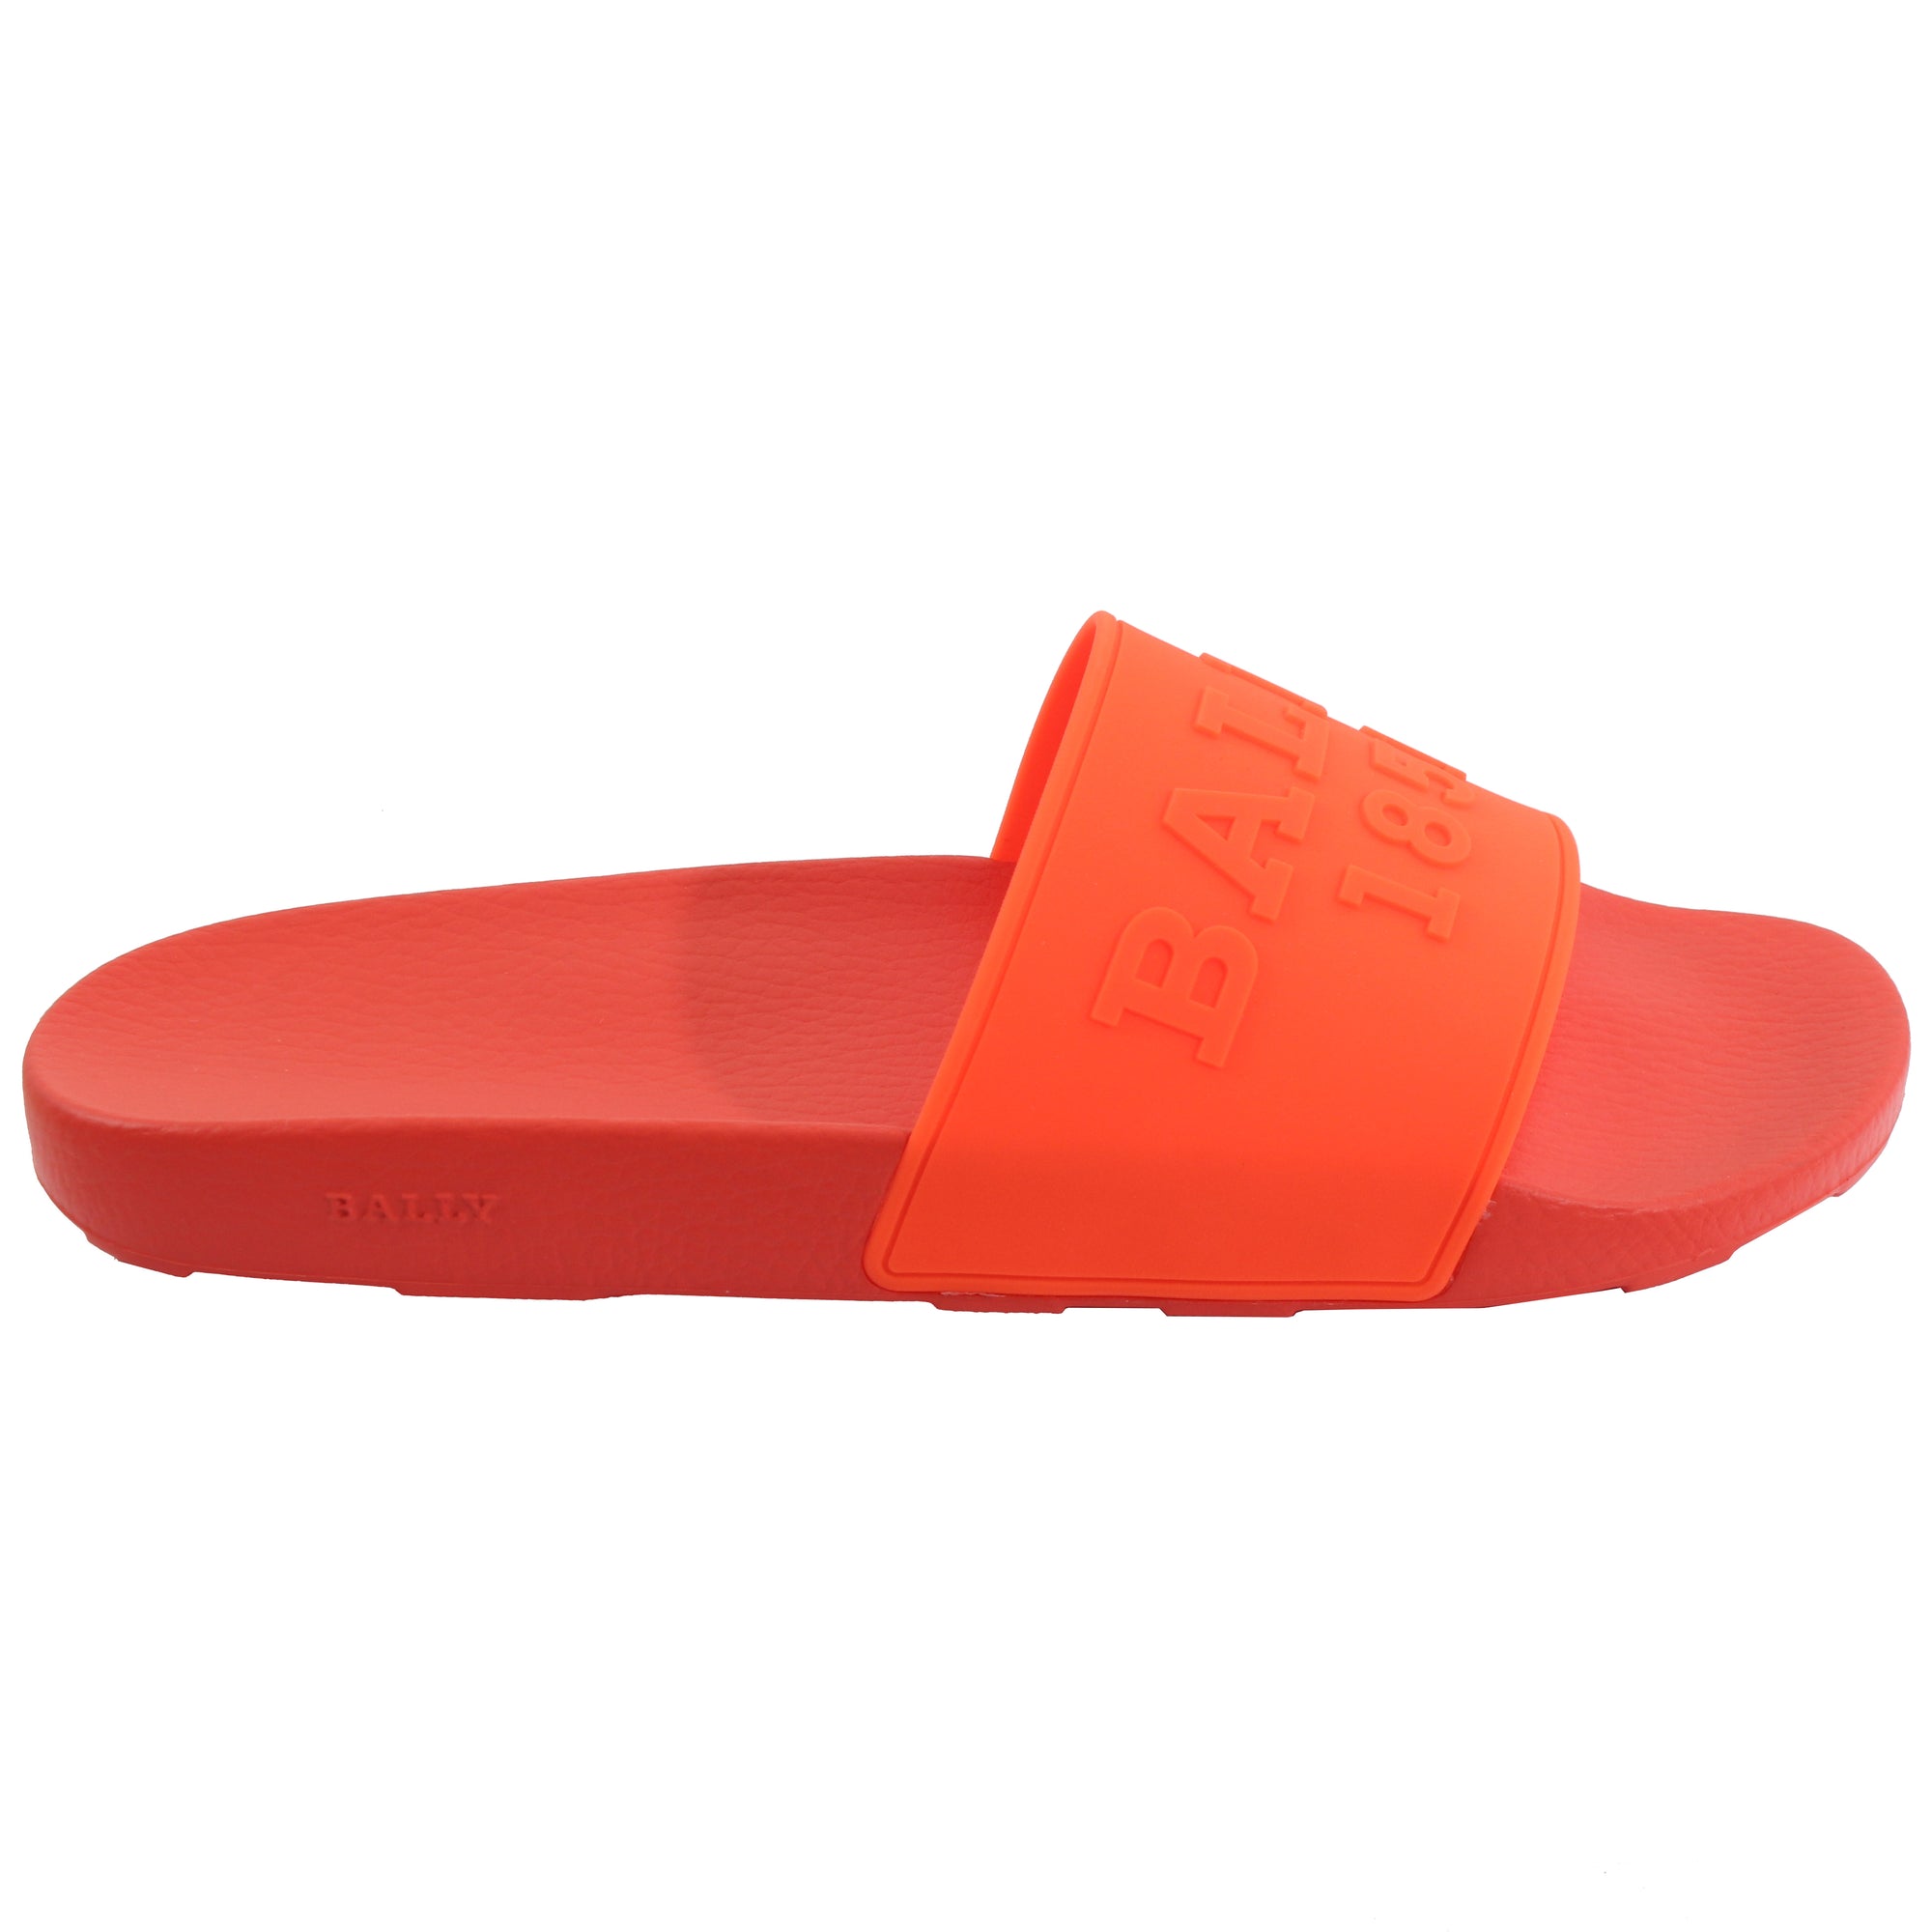 Slaim Rubber Sandal - Orange